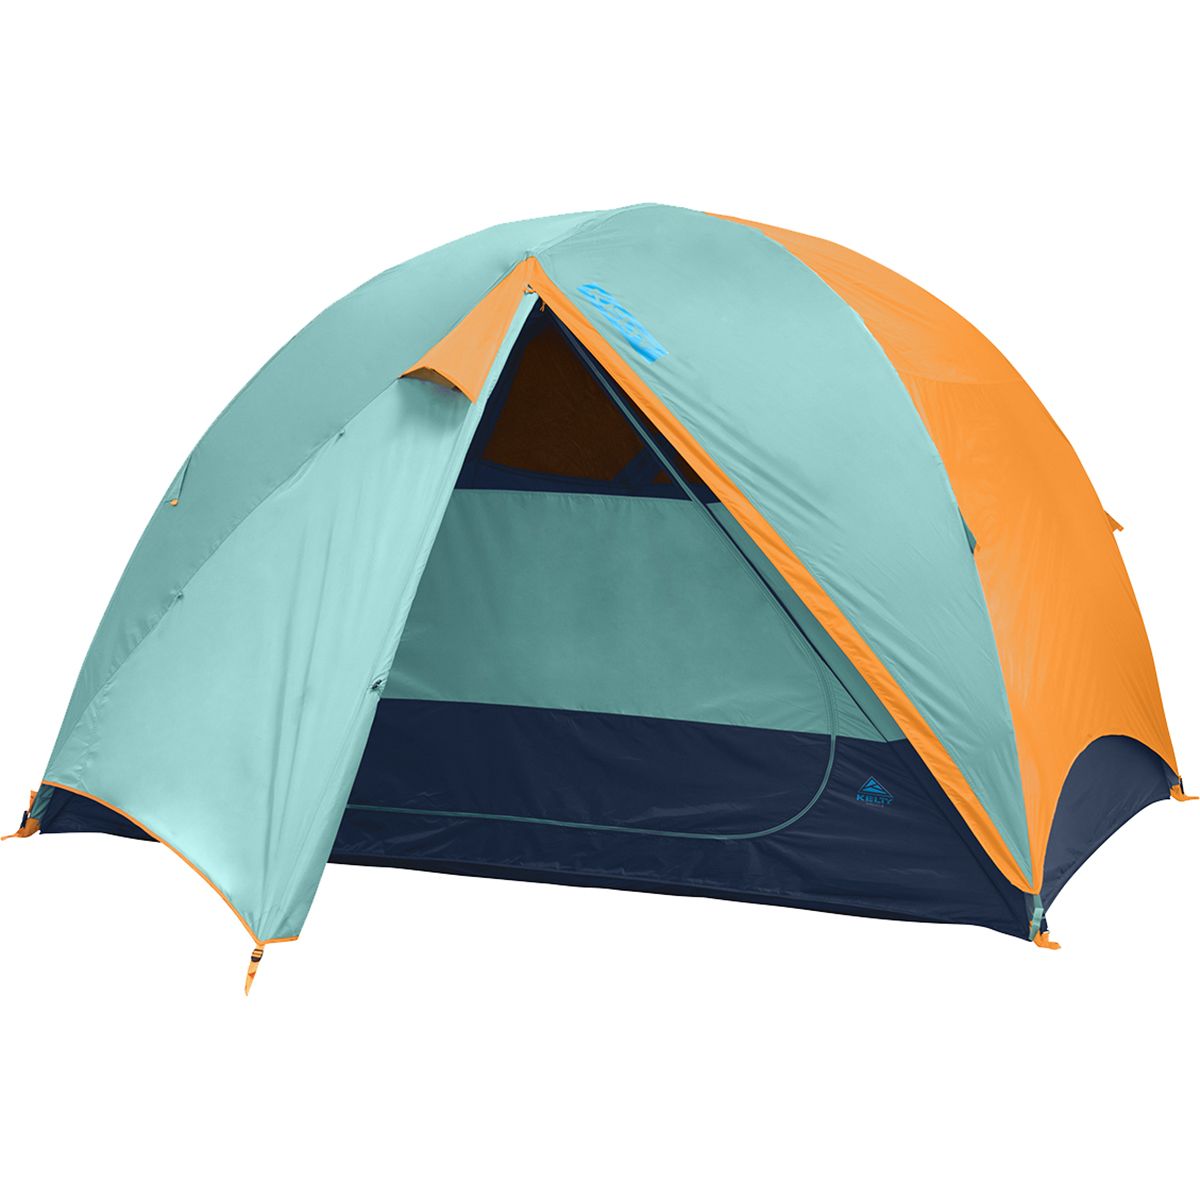 Kelty Wireless 6 Tent: 6 Person 3 Season